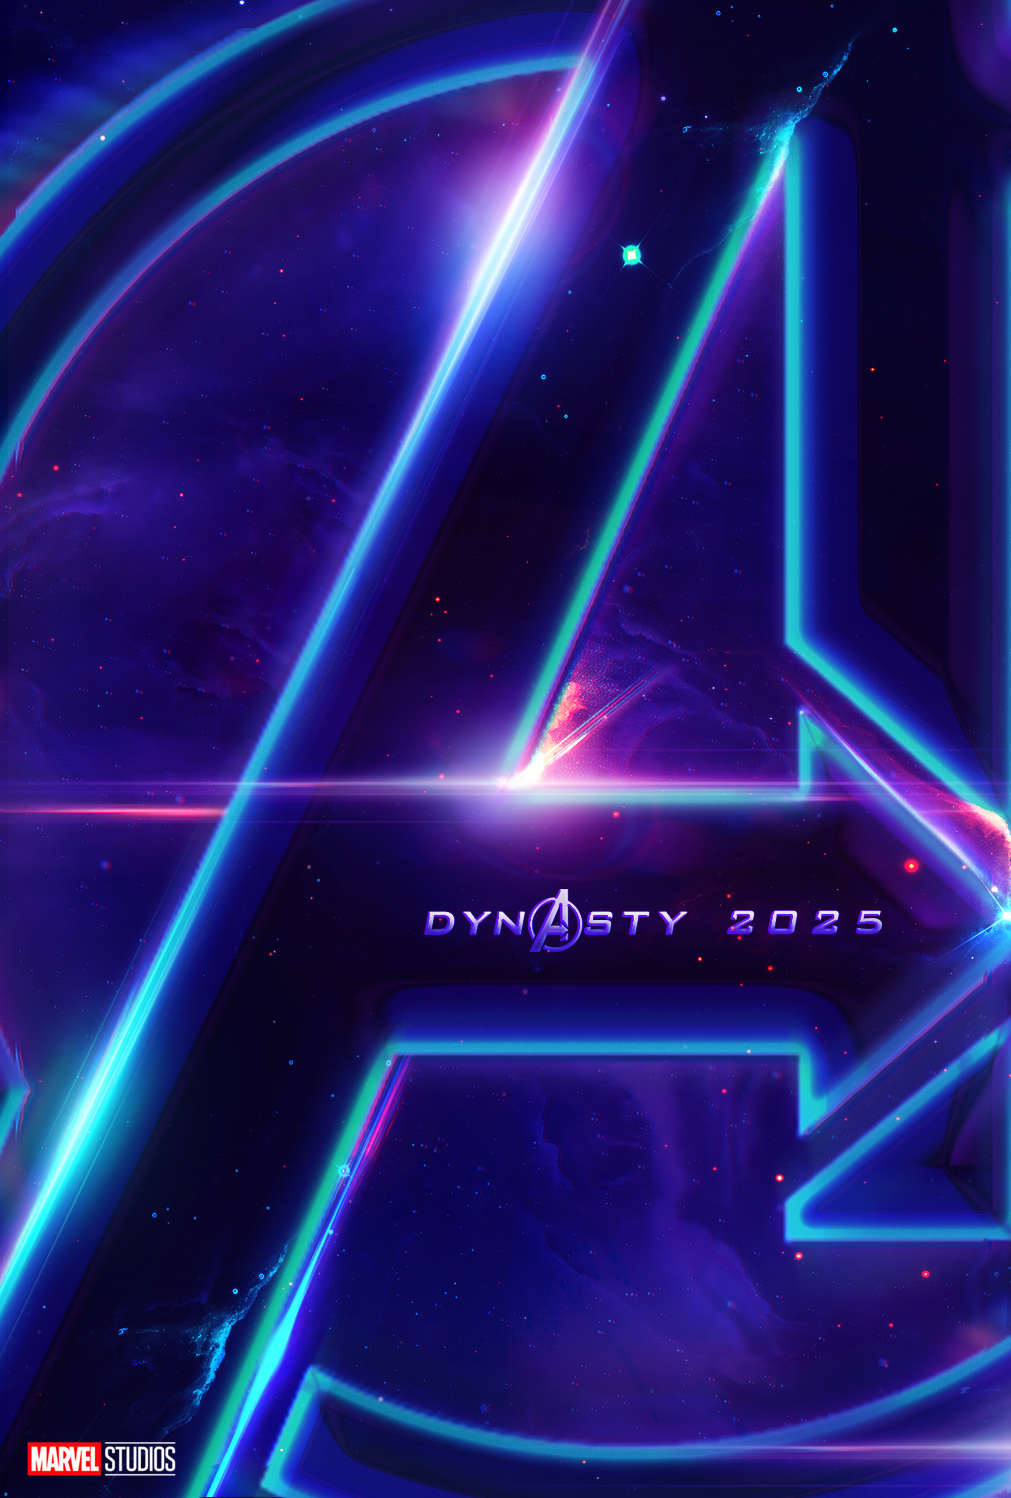 AVENGERS 5 THE KANG DYNASTY Teaser poster 2025 by Andrewvm on DeviantArt